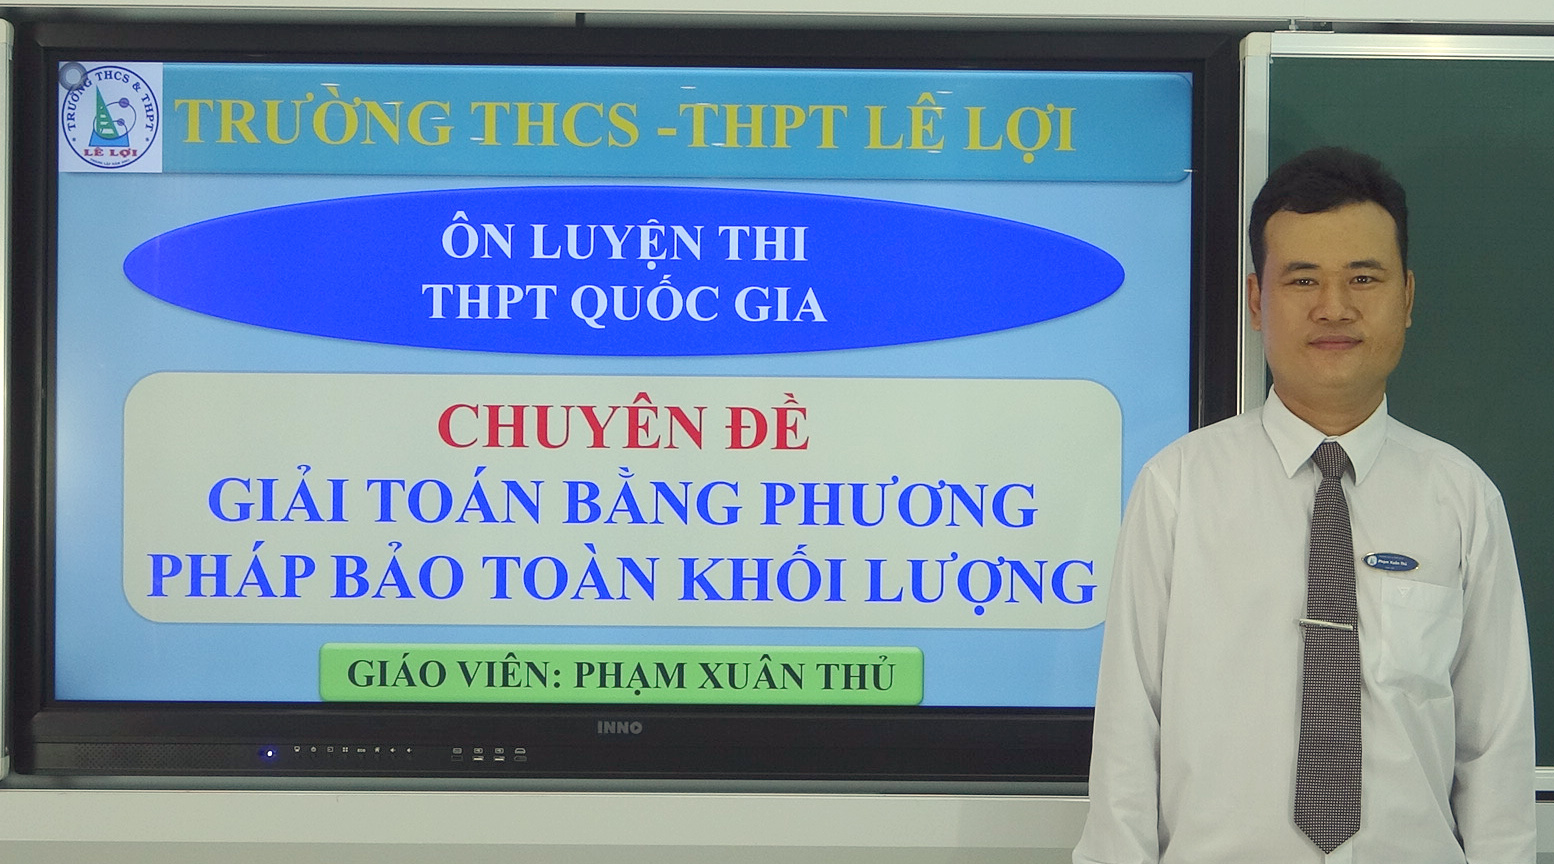 Khối lớp 12 - Giải toán bằng phương pháp bảo toàn khối lượng - Thầy Phạm Xuân Thủ